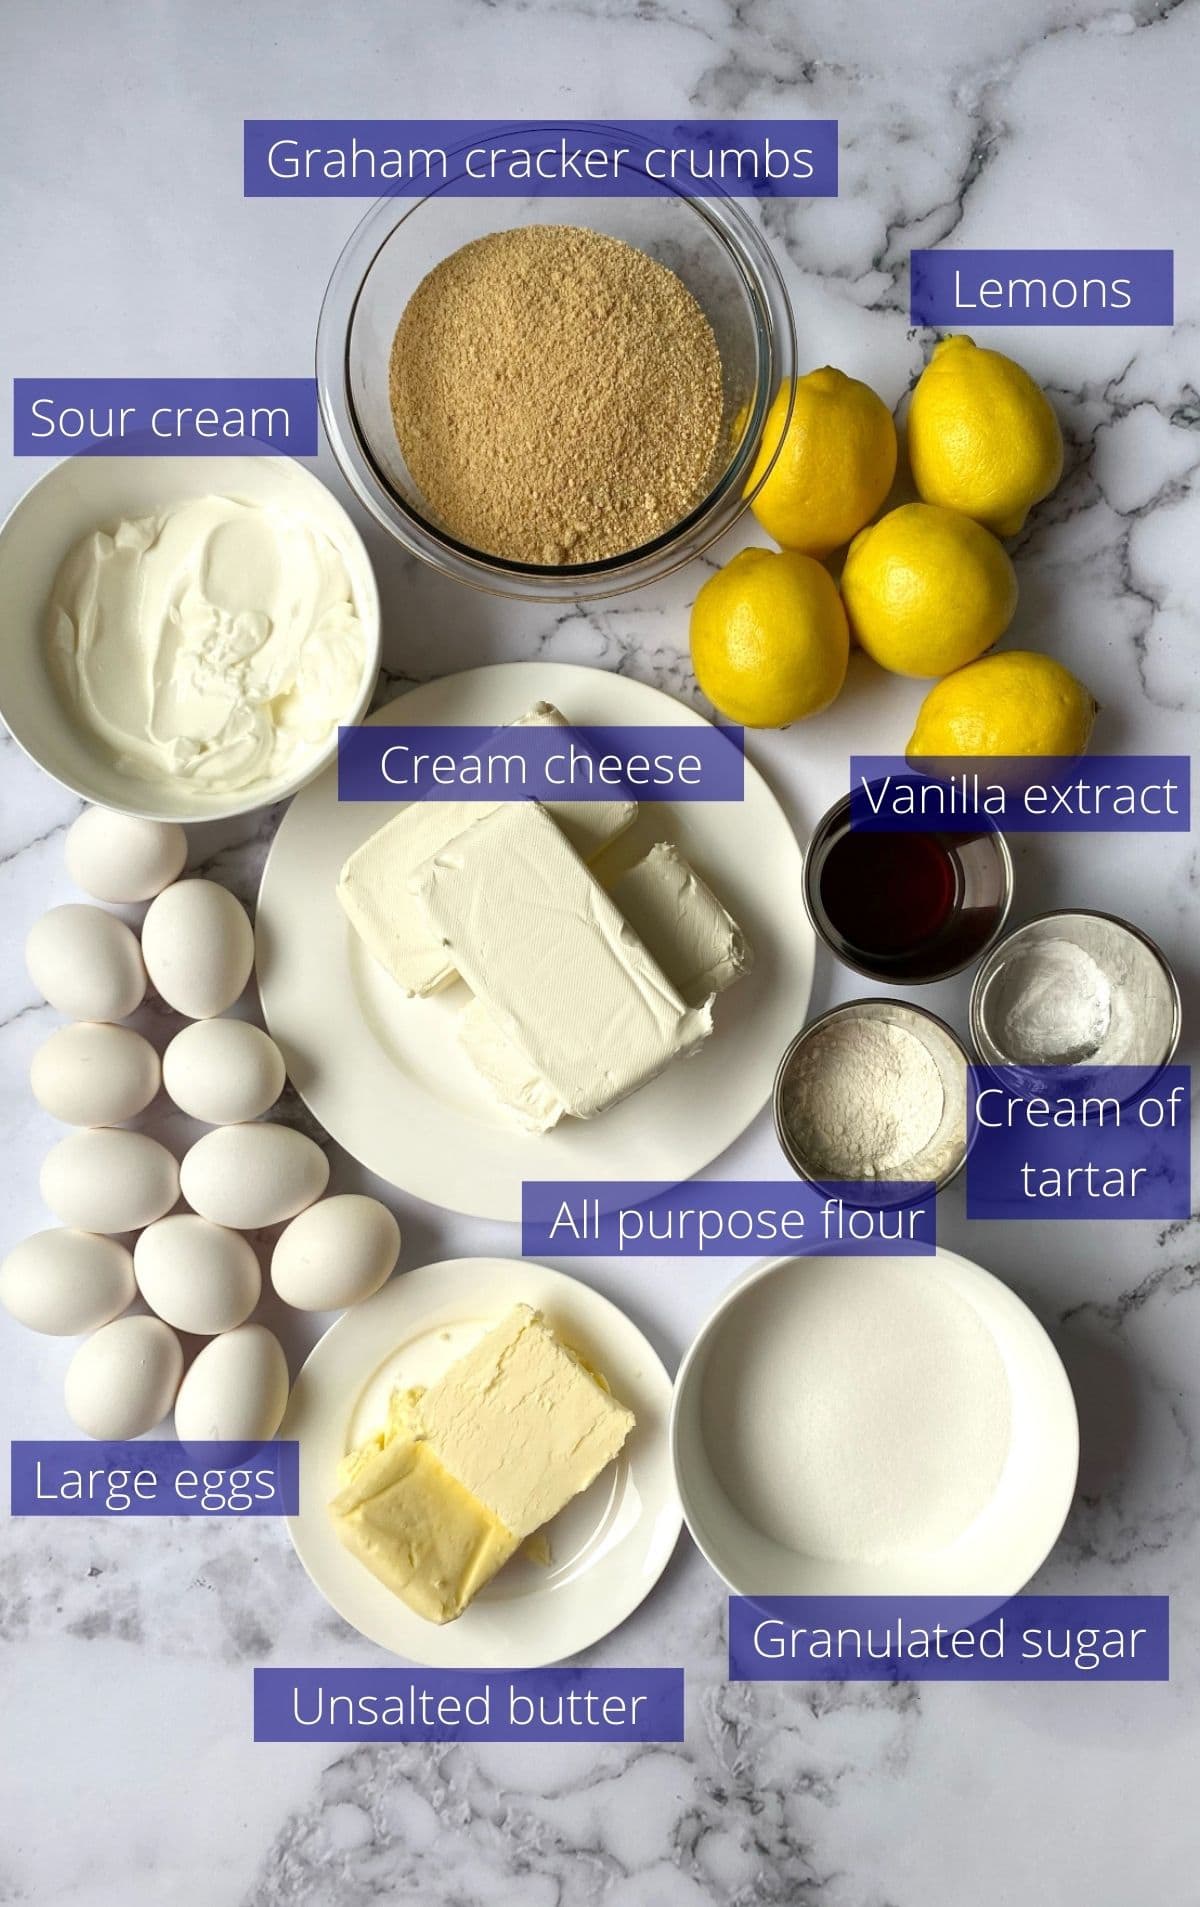 Ingredients for lemon meringue cheesecake.